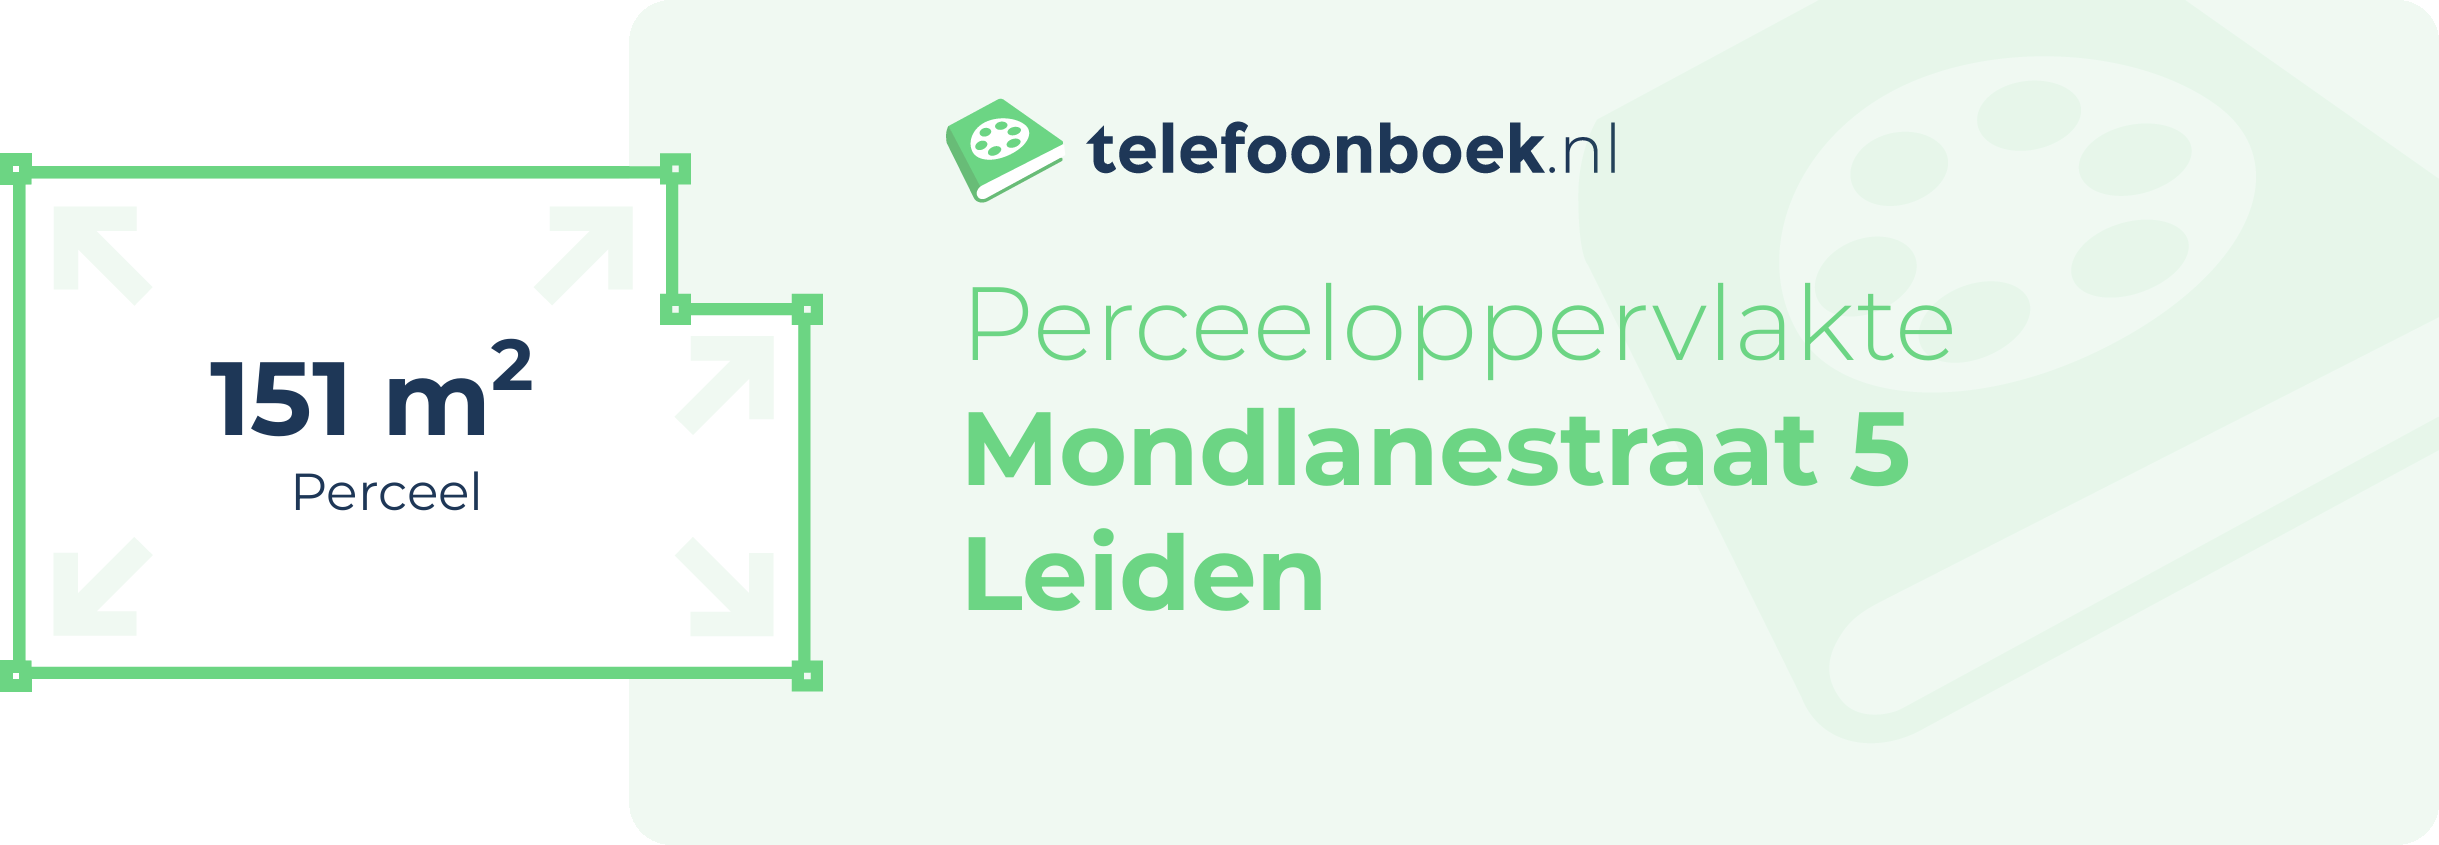 Perceeloppervlakte Mondlanestraat 5 Leiden